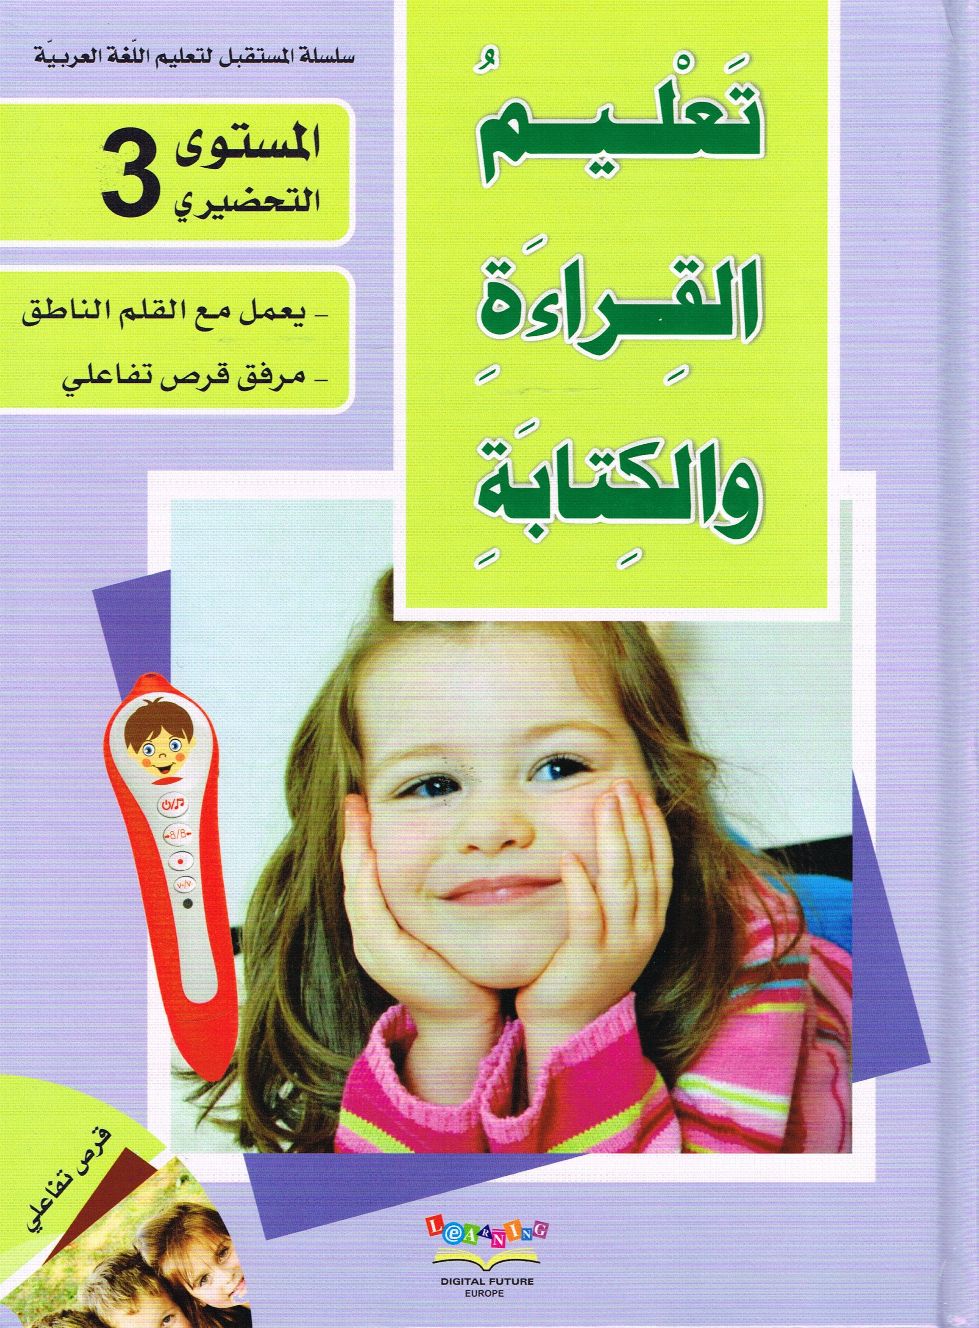 Arabisch Lesen und Schreiben lernen Vorschule 3 سلسلة المستقبل المستوى التحضيري الثالث